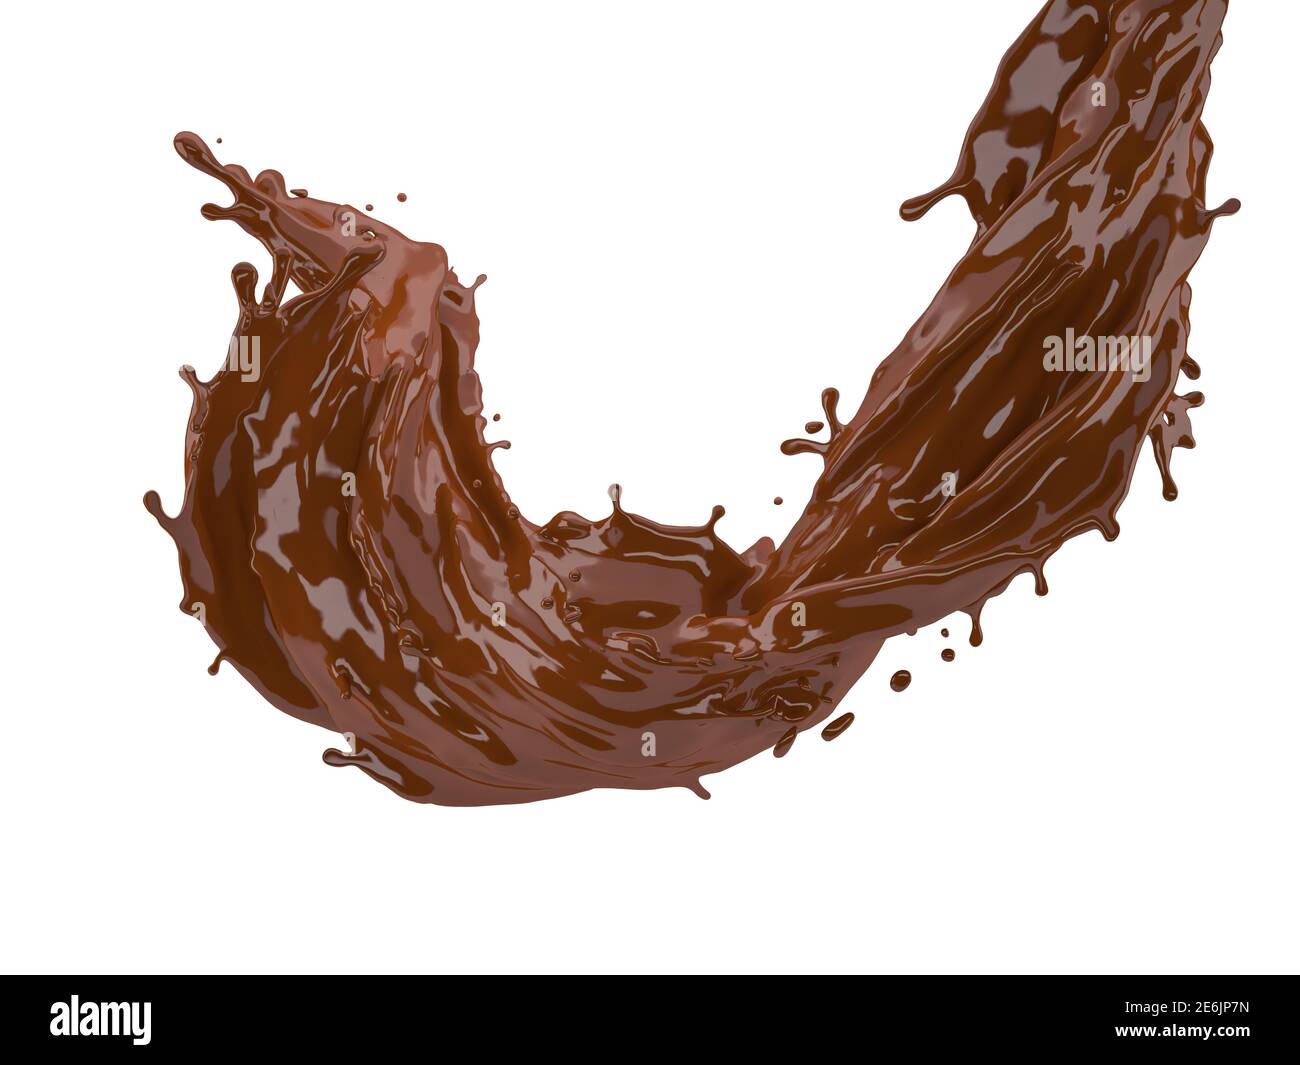 illustrazione 3d di schizzi di cioccolato su sfondo bianco con ritaglio percorso Foto Stock